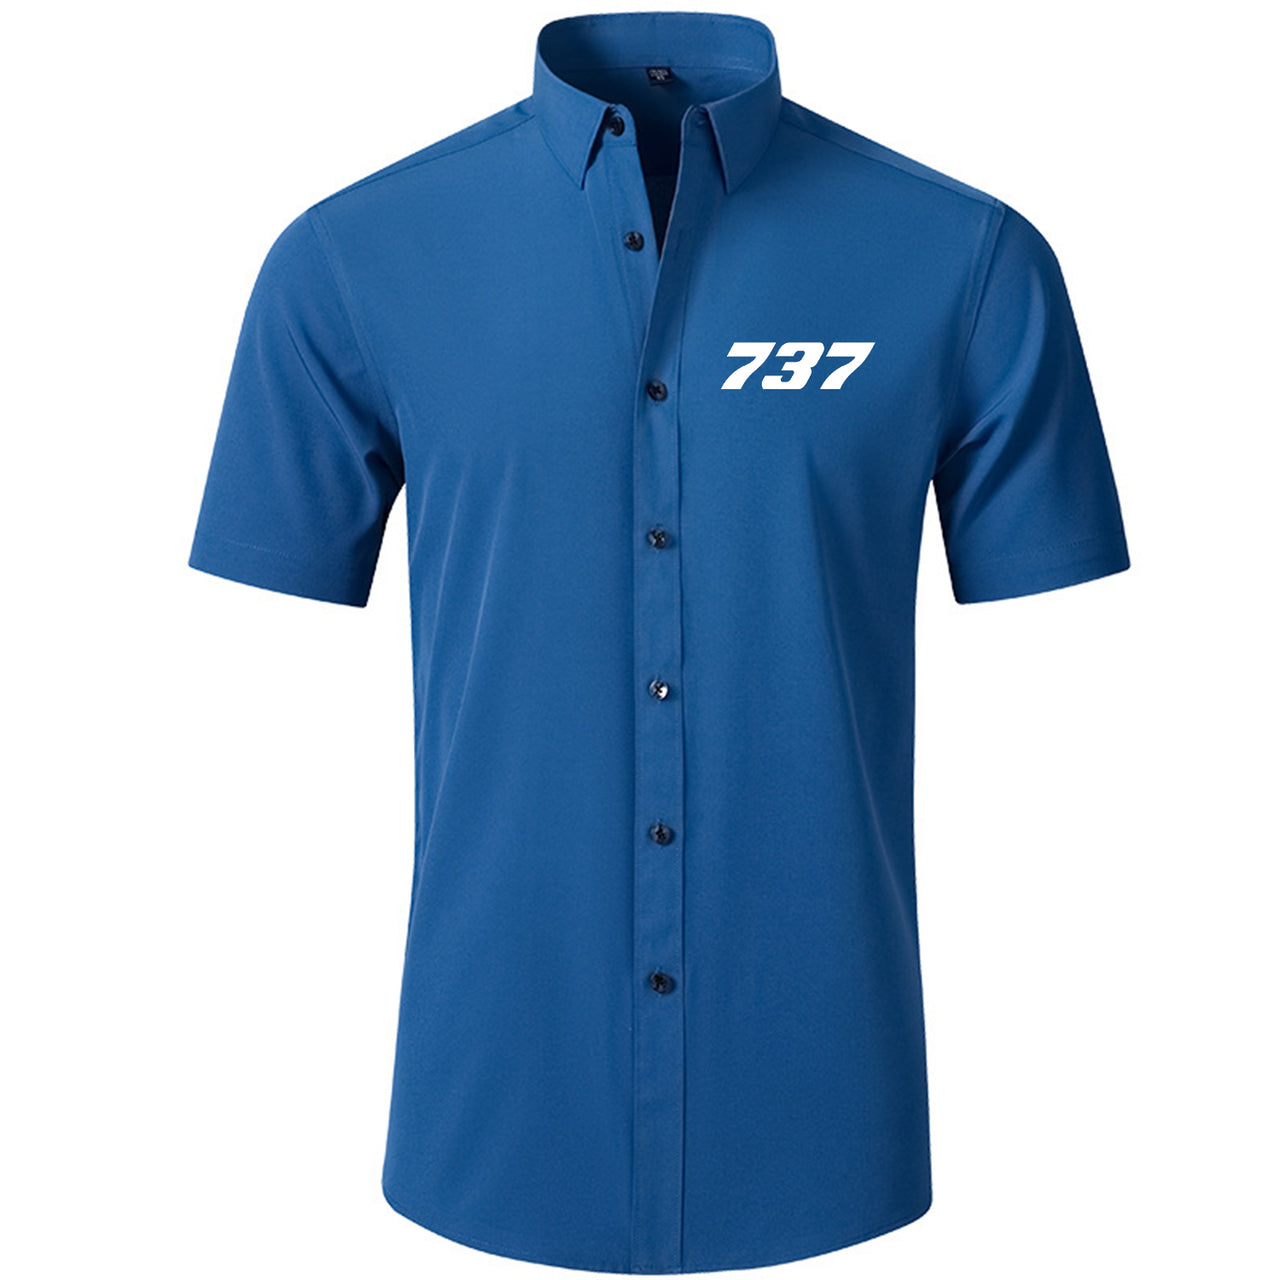 737 Flat Text Designed Short Sleeve Shirts